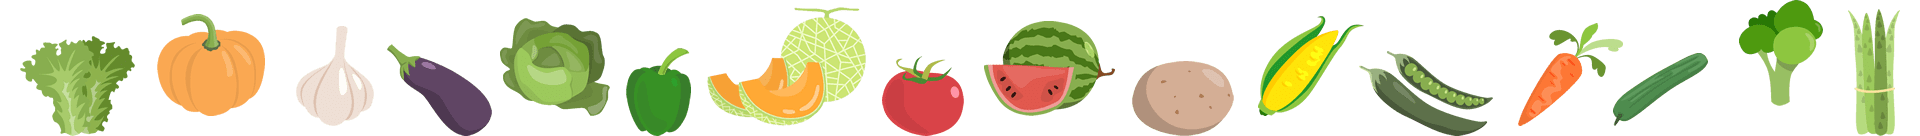 色とりどりの野菜と果物のイラスト